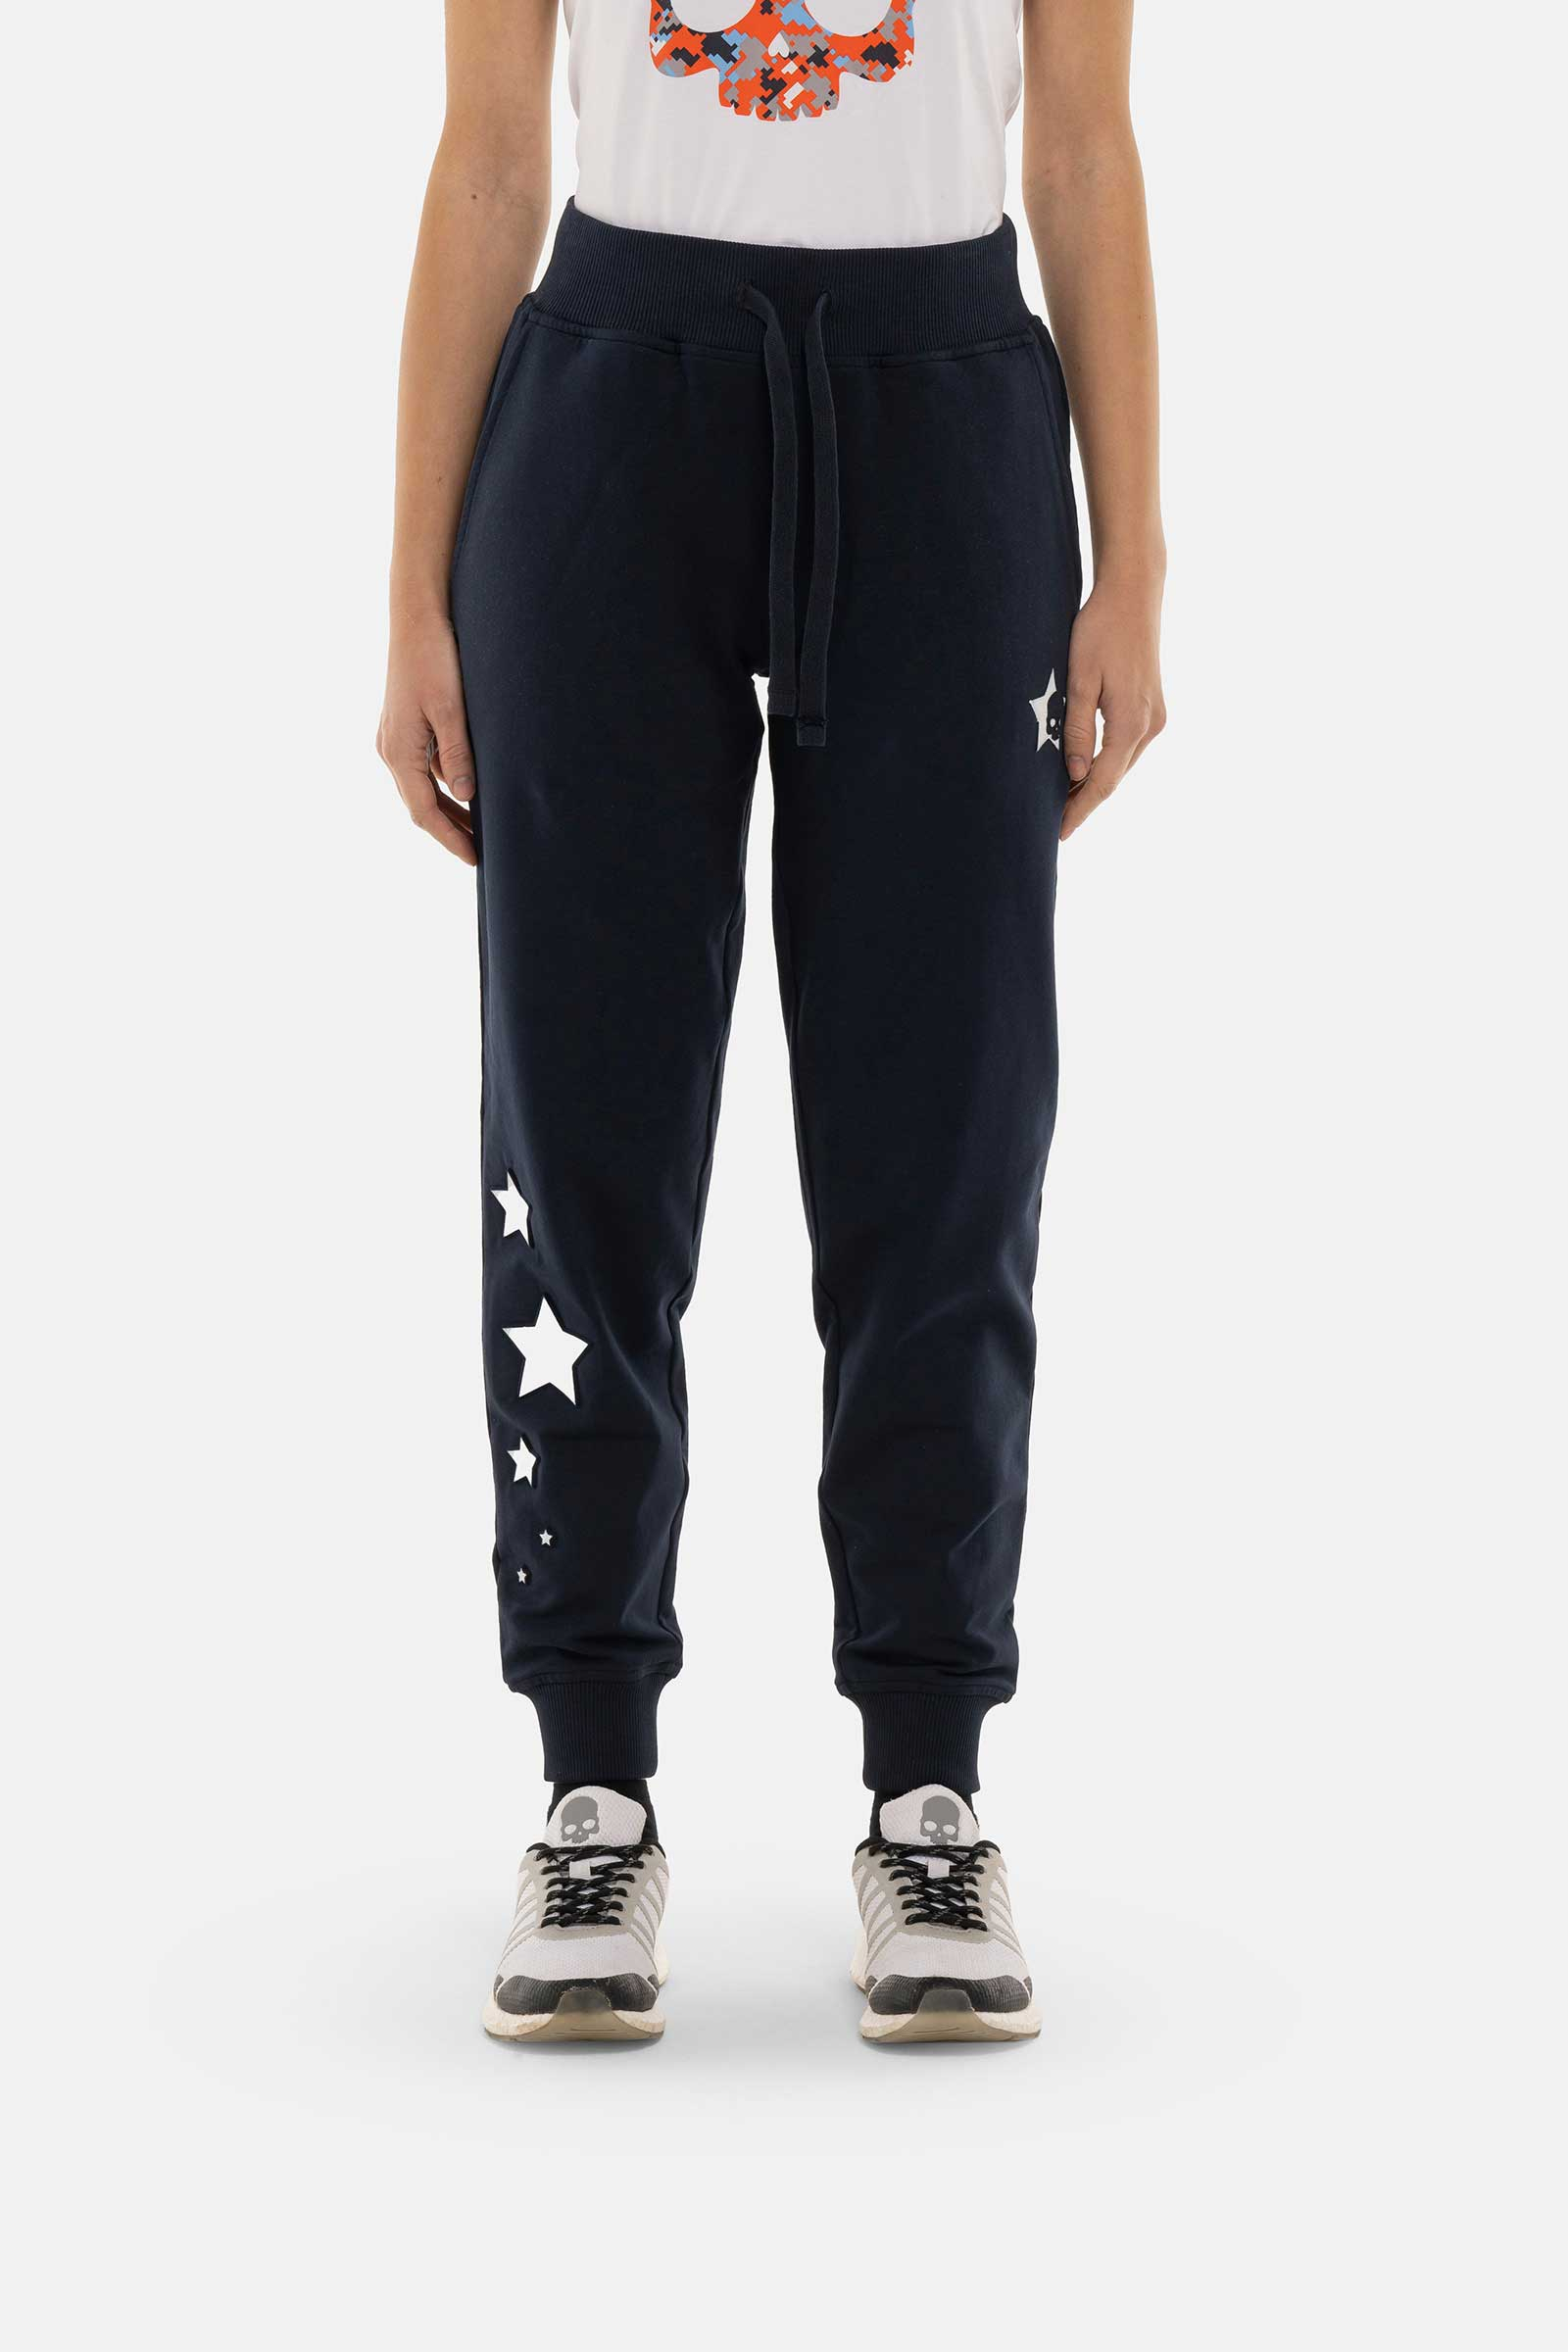 STARS PANTS - Apparel - Hydrogen - Luxury Sportwear